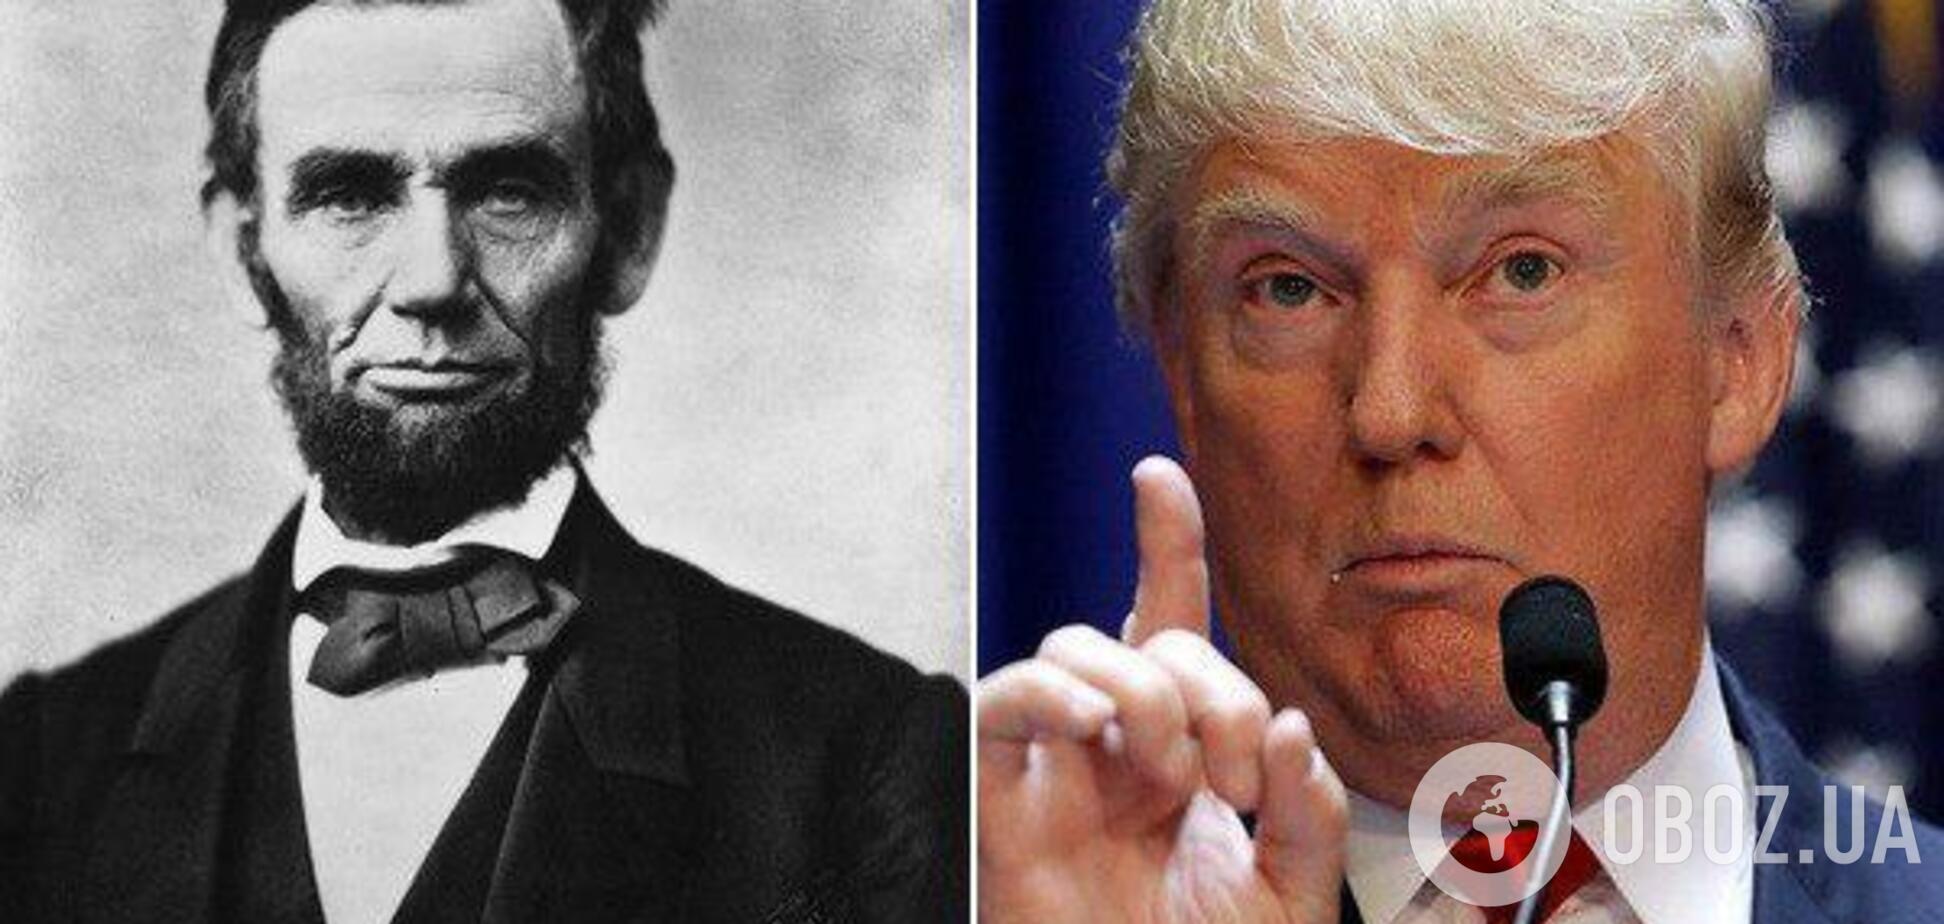 Трамп краще Лінкольна? У США спливло несподіване опитування